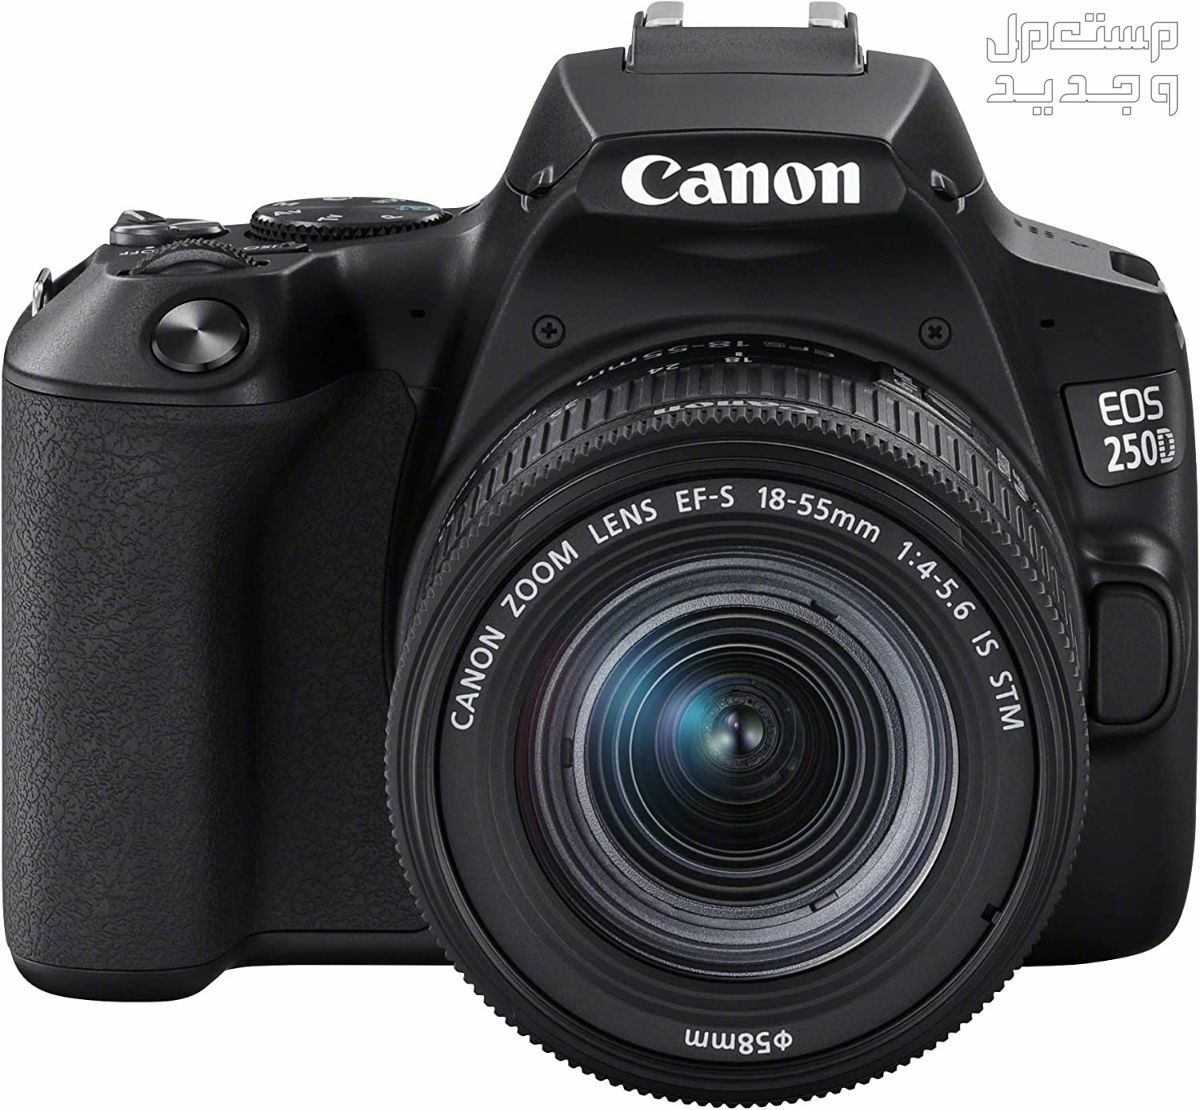 سعر ومميزات ومواصفات أرخص 5 كاميرات تصوير من كانون في فلسطين مميزات كاميرا Canon EOS 250D